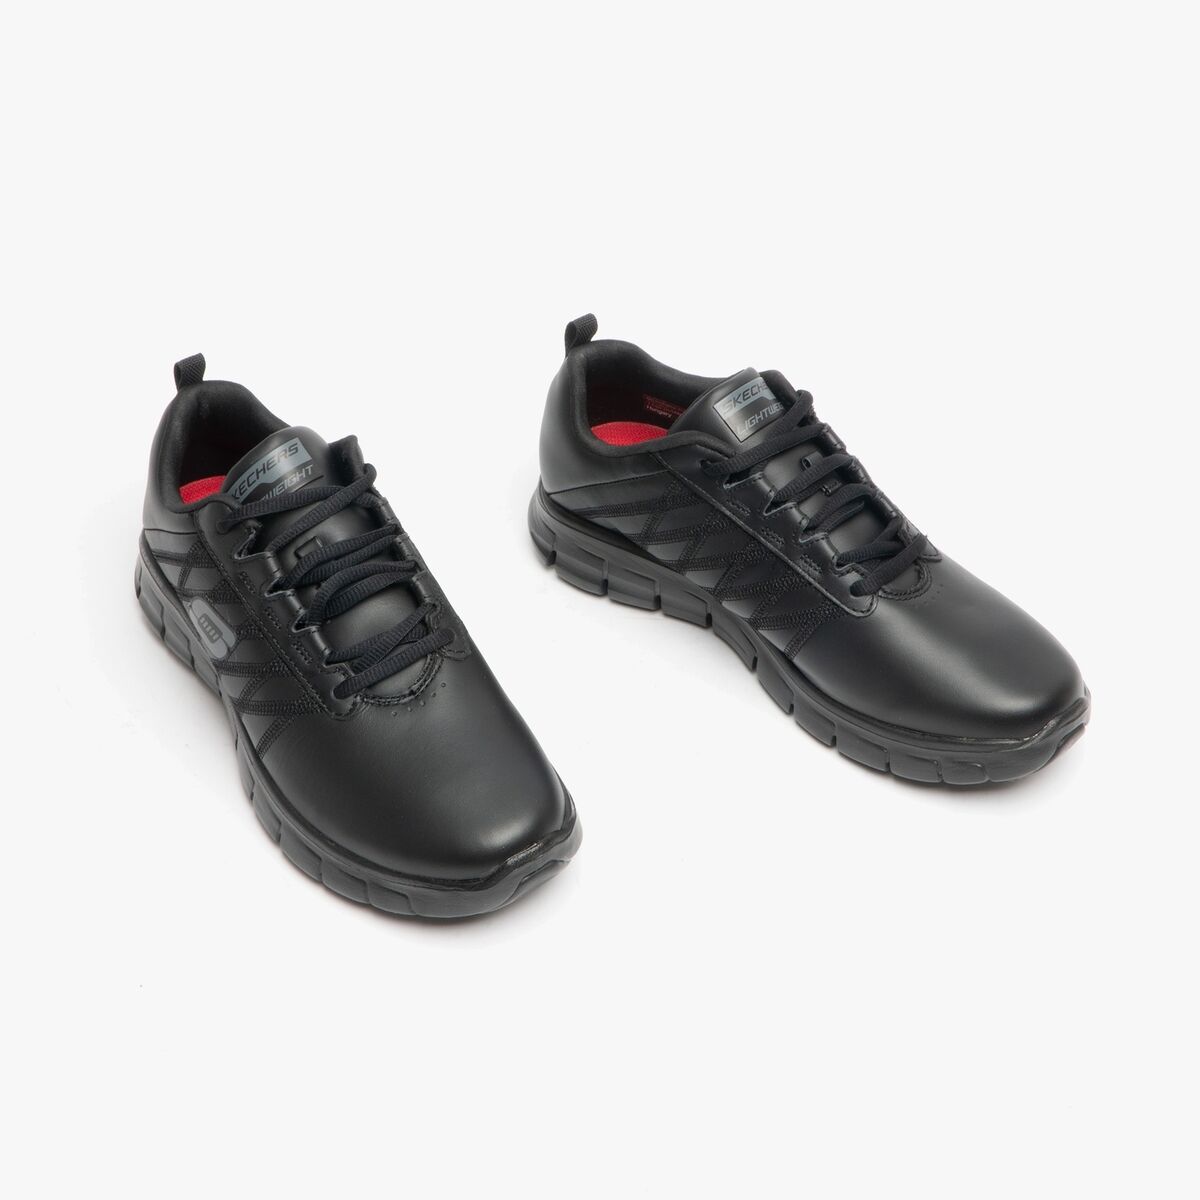 Escalera satélite escarabajo Skechers TRABAJO RELAJADO AJUSTE SEGURO ERATH SR Damas Mujer Zapatos  Entrenadores Negro | eBay